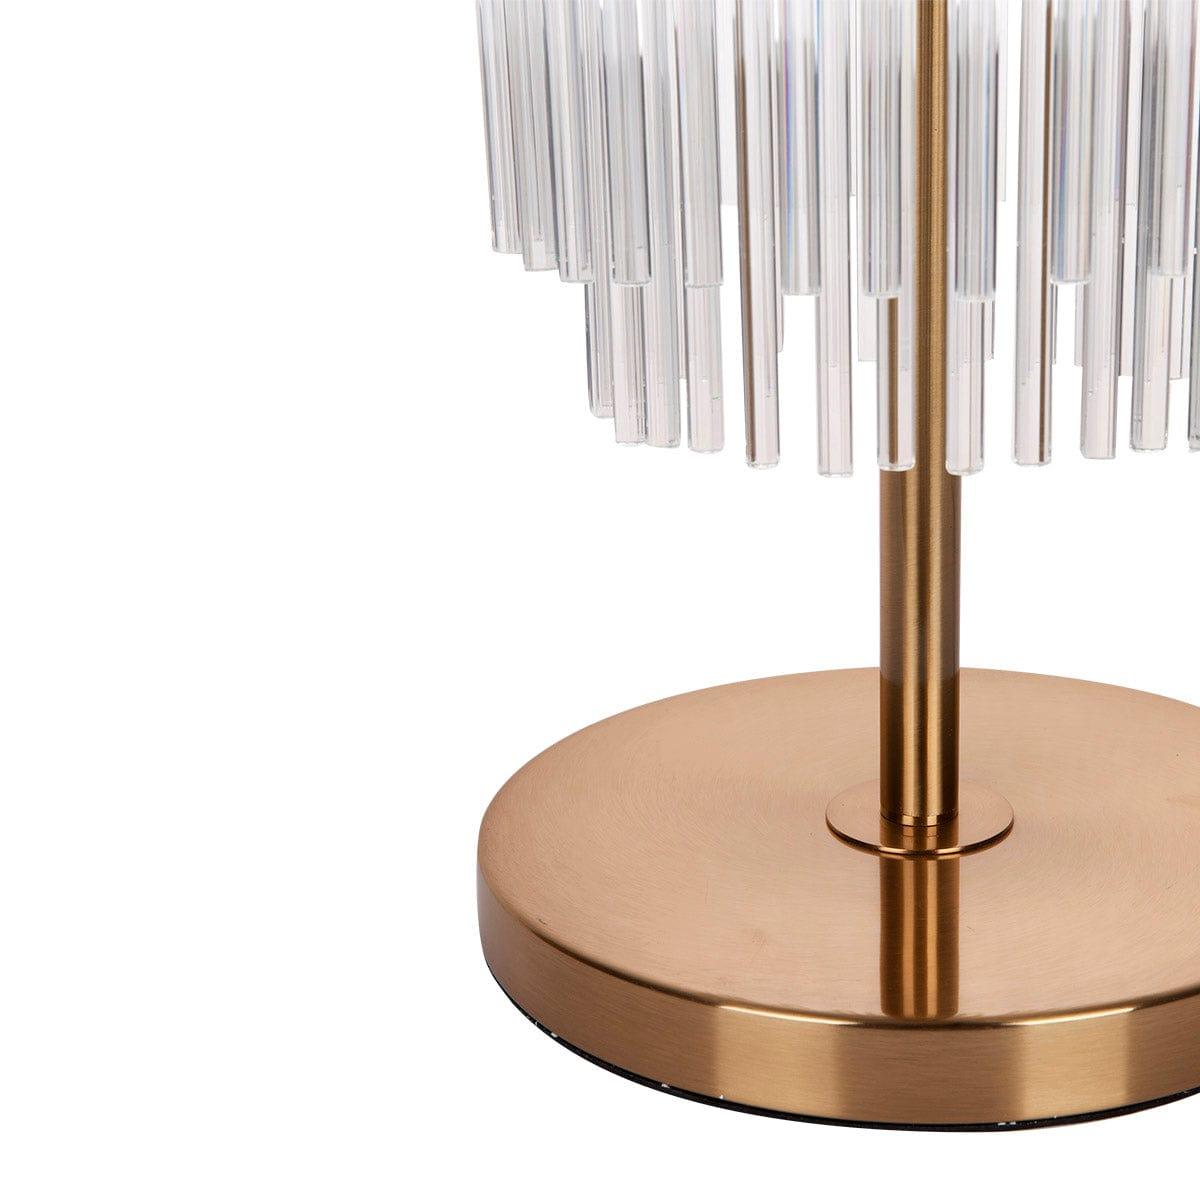 Zara Table Lamp - Brass.